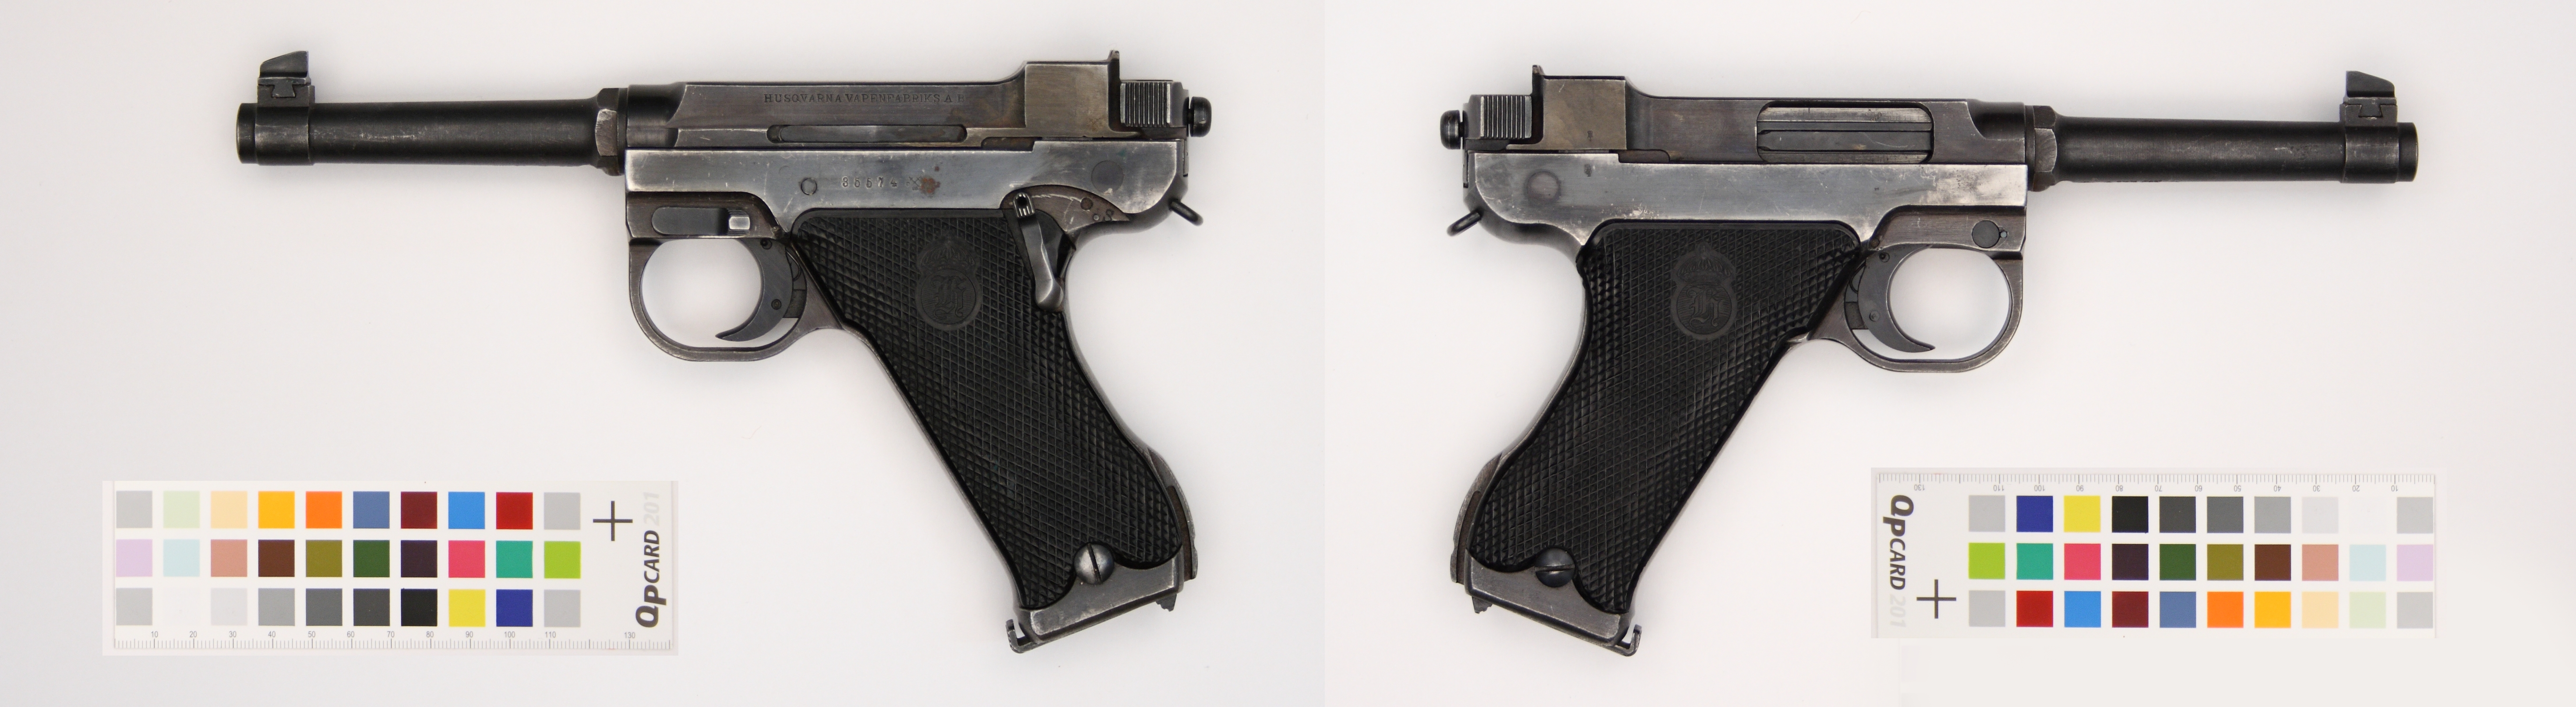 Pistol (Model) M/40